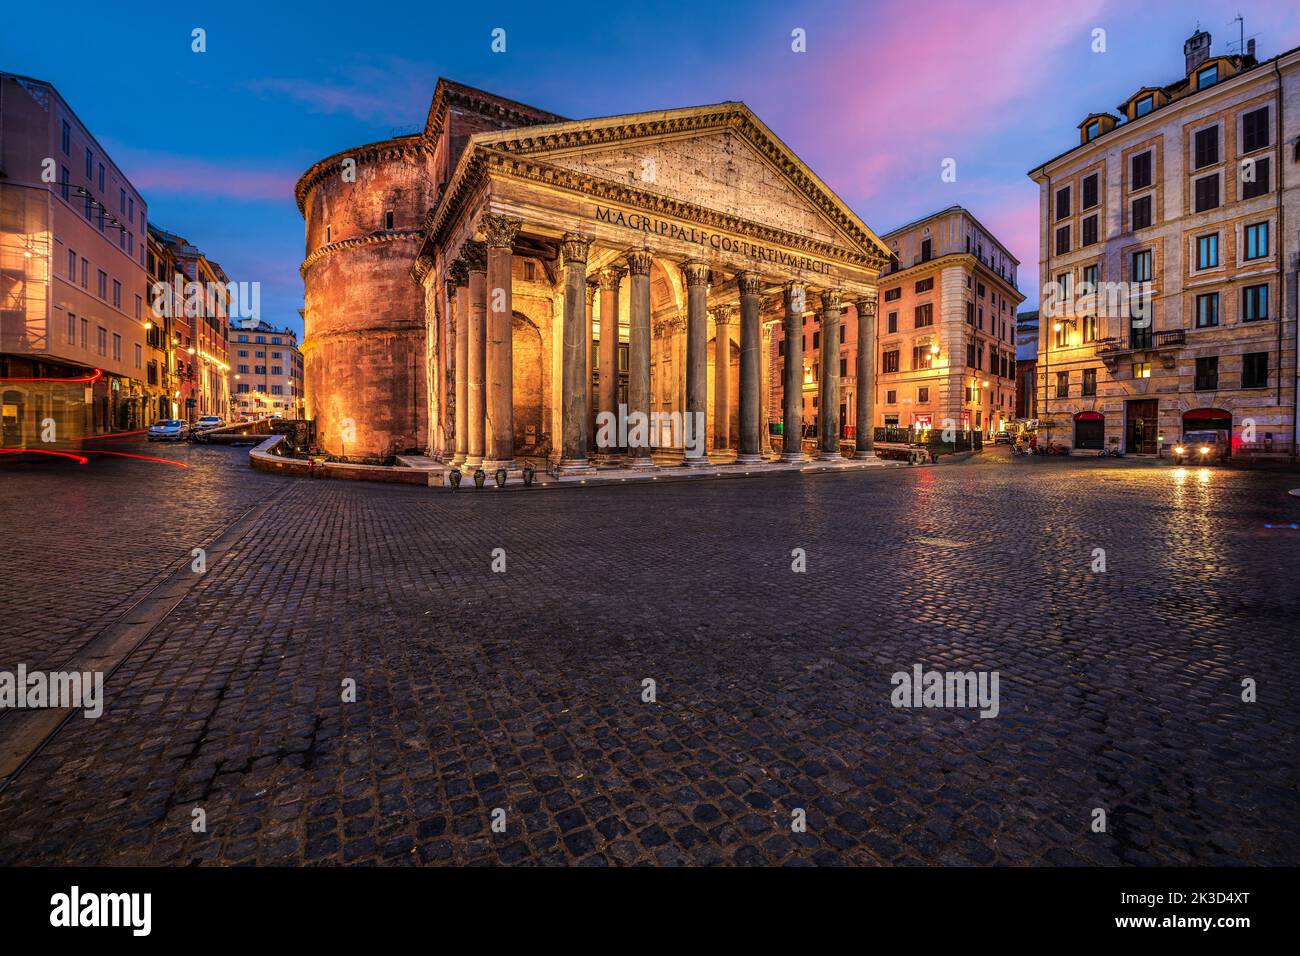 Roma, Italia en el Panteón, un antiguo templo romano que data del siglo 2nd. Foto de stock